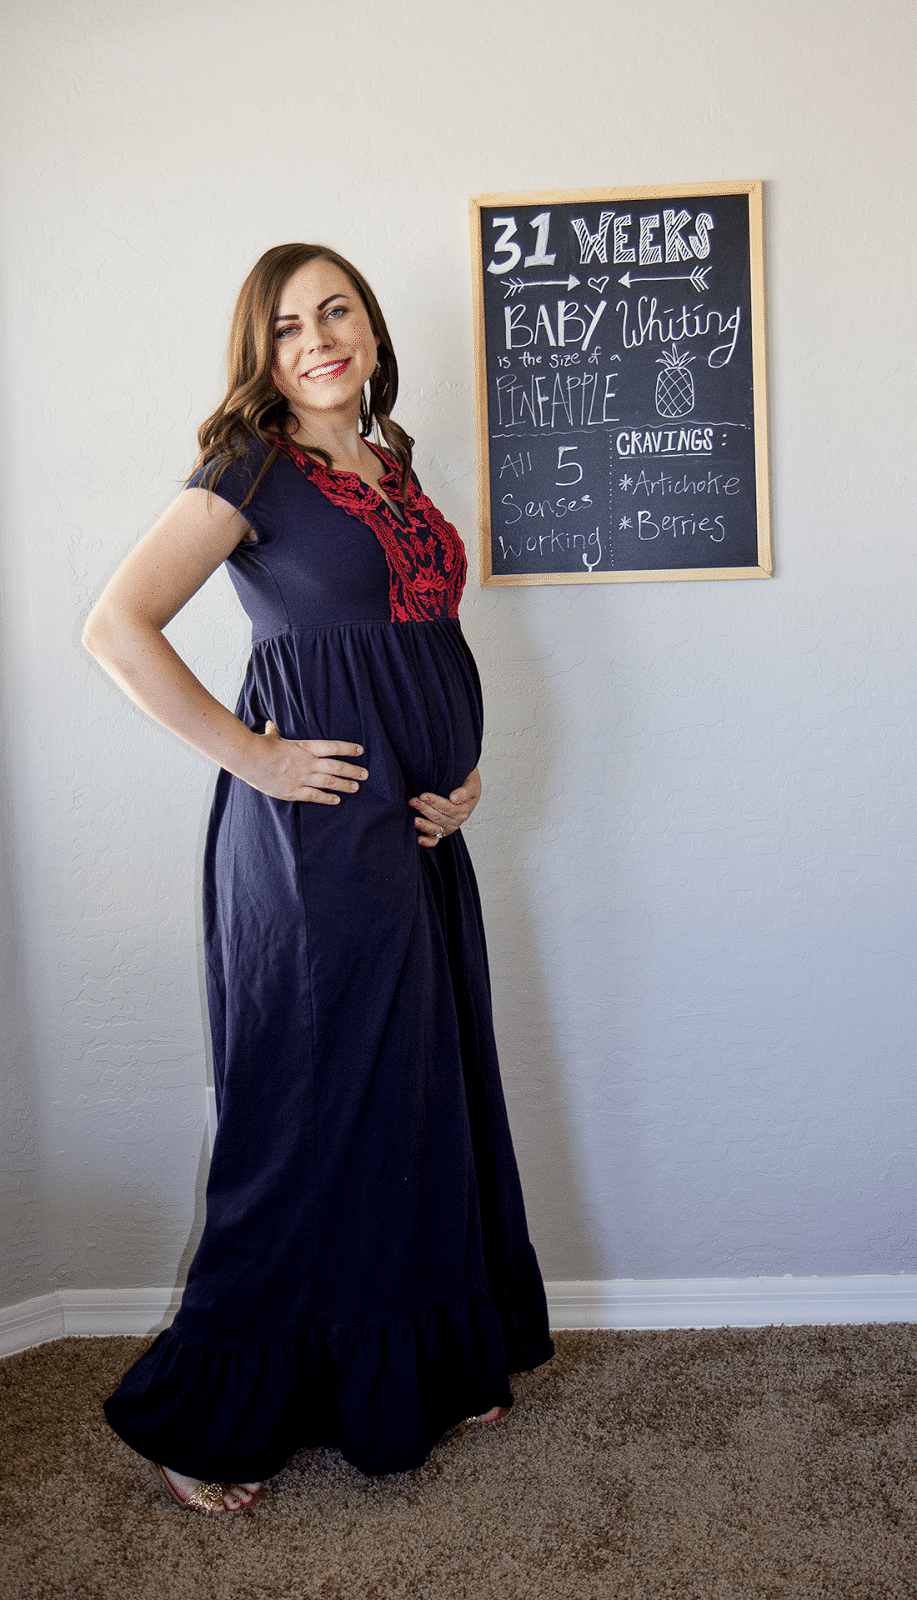 Pregnancy Update: 31 Weeks